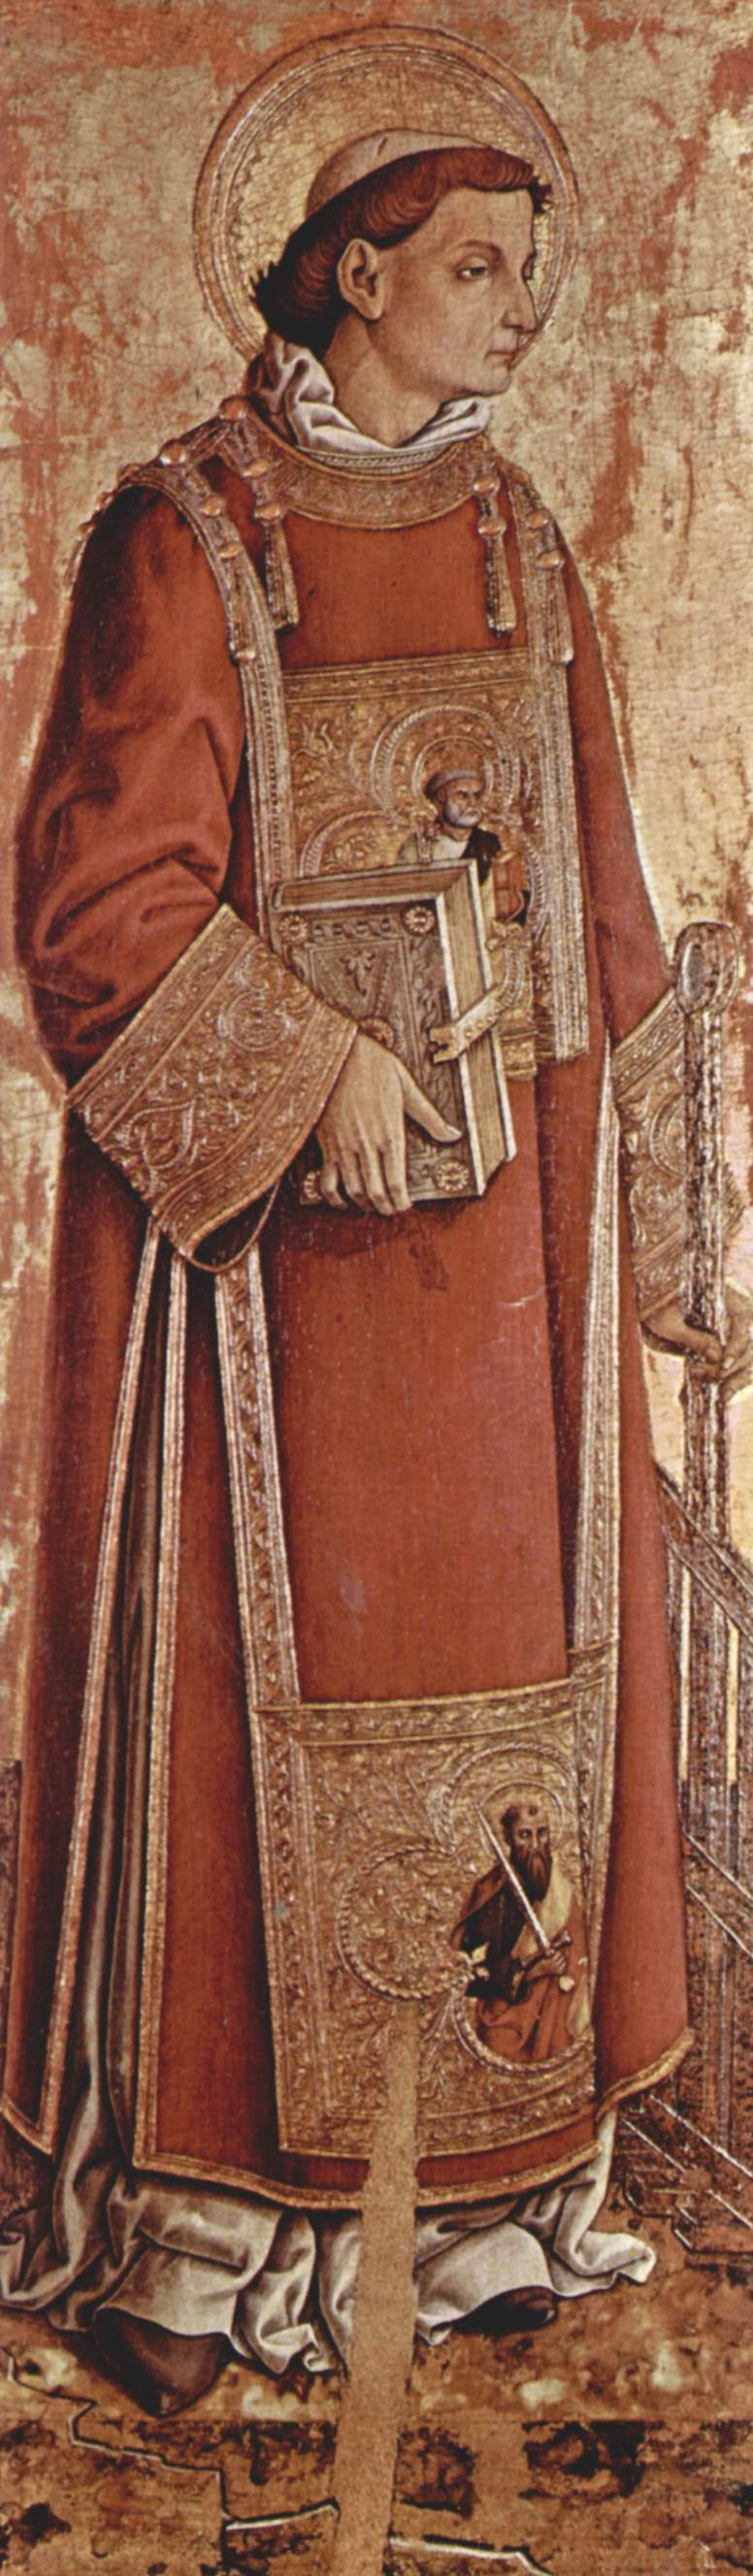 Карло Кривелли. Святой Лаврентий. Алтарь из церкви Сан Сильвестро в Масса Фермана, внутренняя левая доска